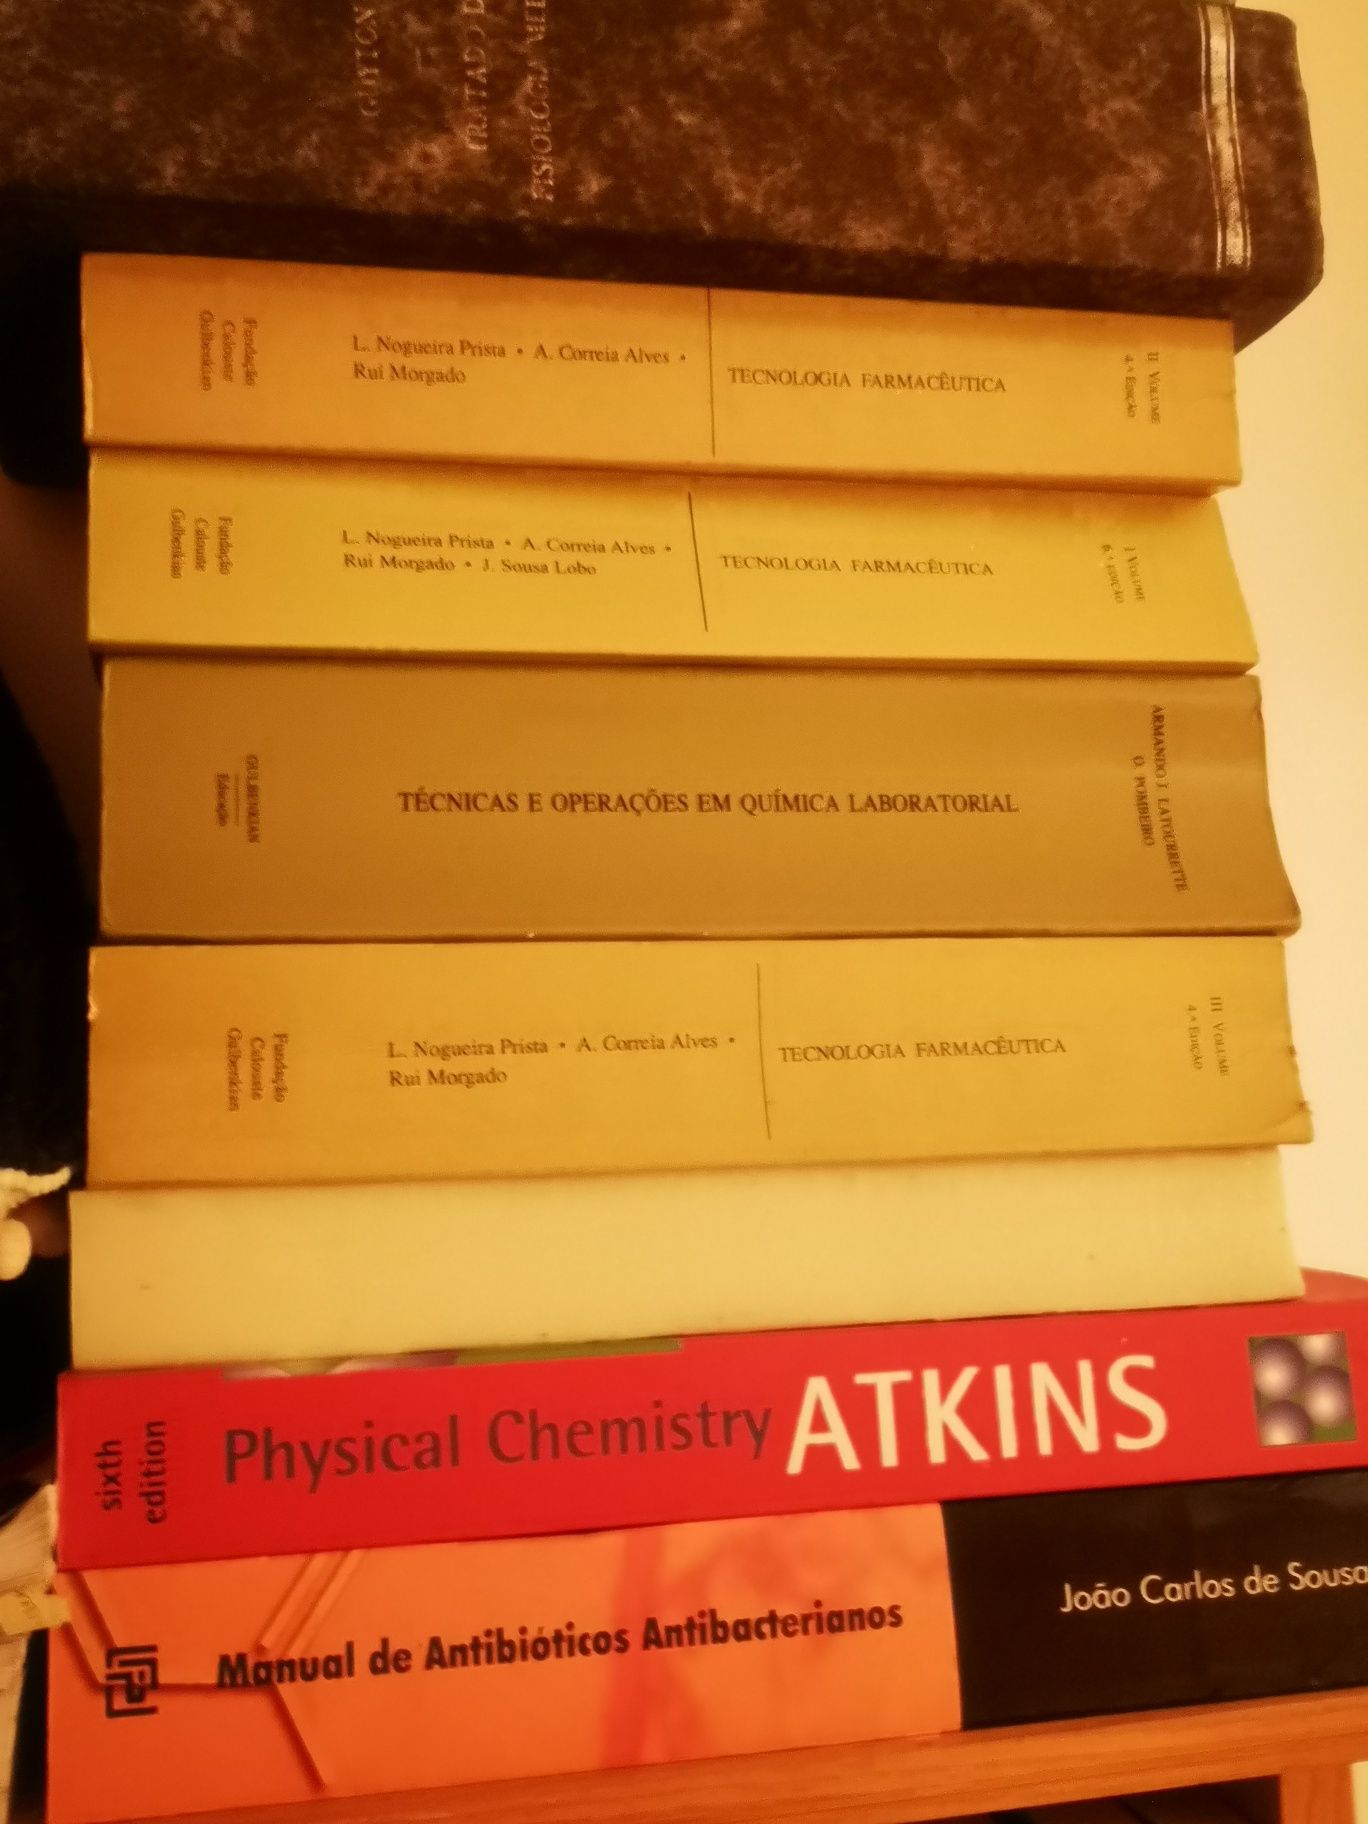 Vendo livros técnicos química, dermatologia, fisiologia, farmácia...